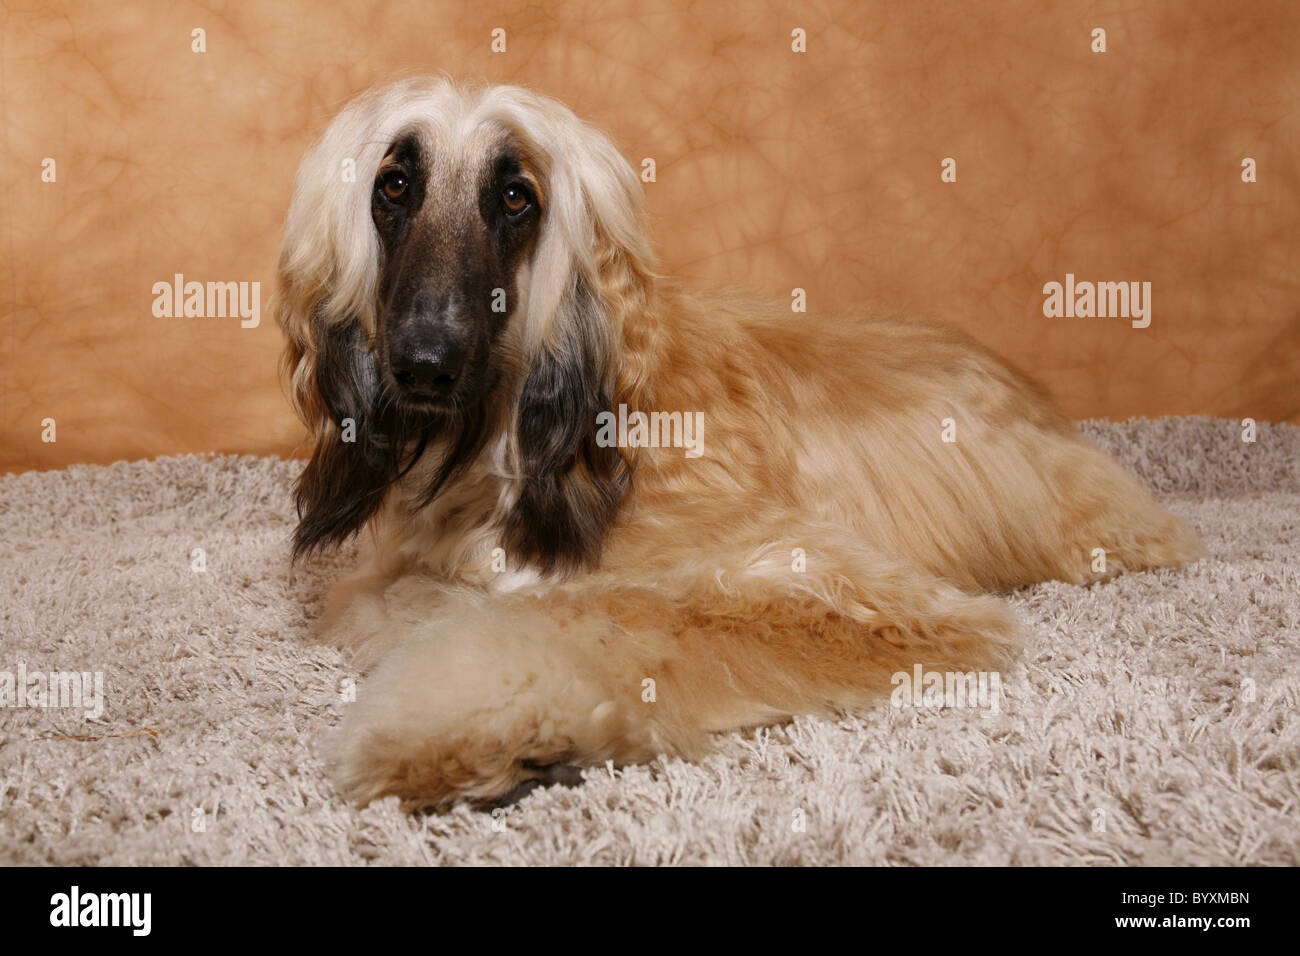 Afghanischer Windhund / Afghan Hound Stock Photo